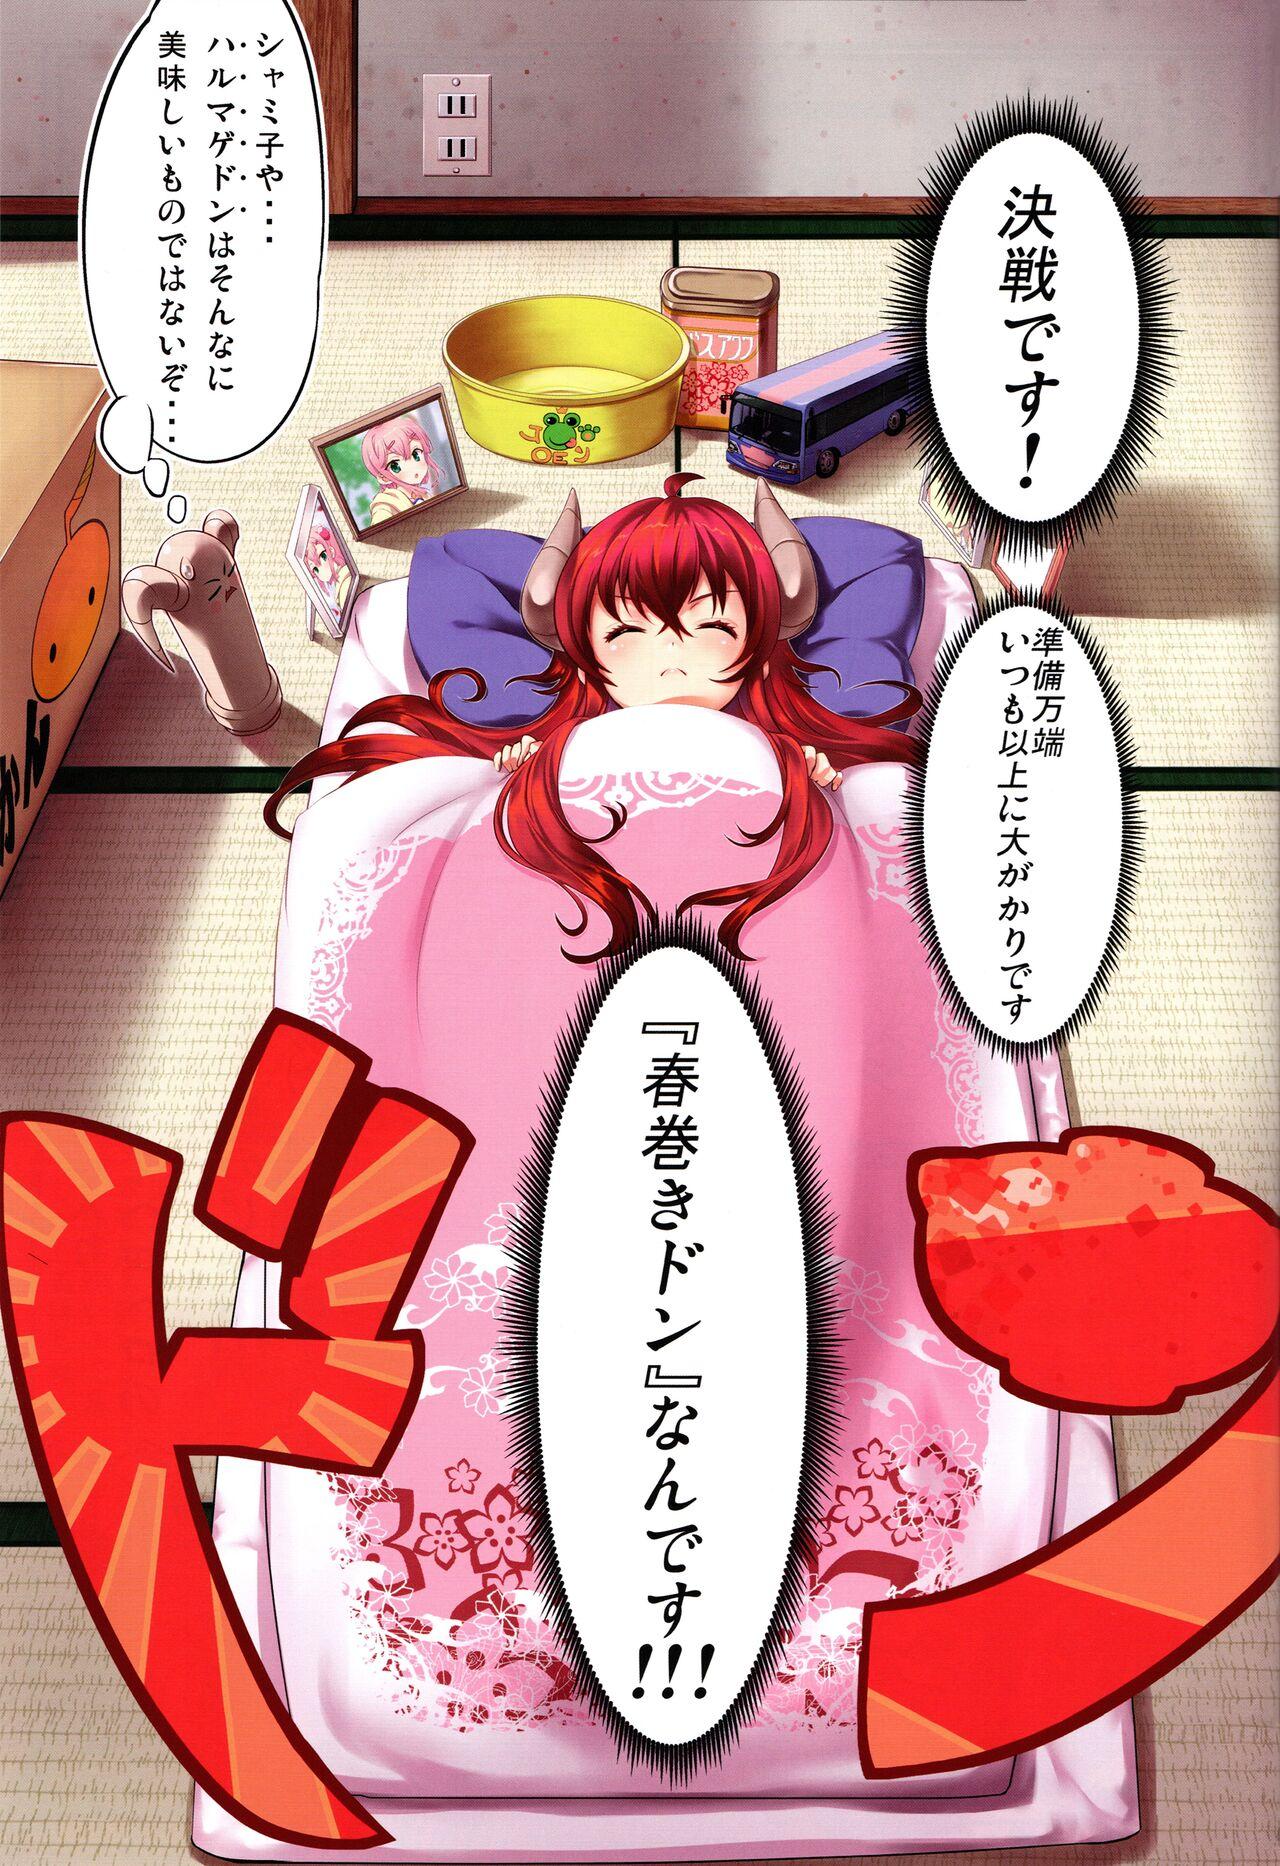 Pack Yume wa Toriatsukai Chuui Nite - Machikado mazoku | the demon girl next door Thylinh - Page 3